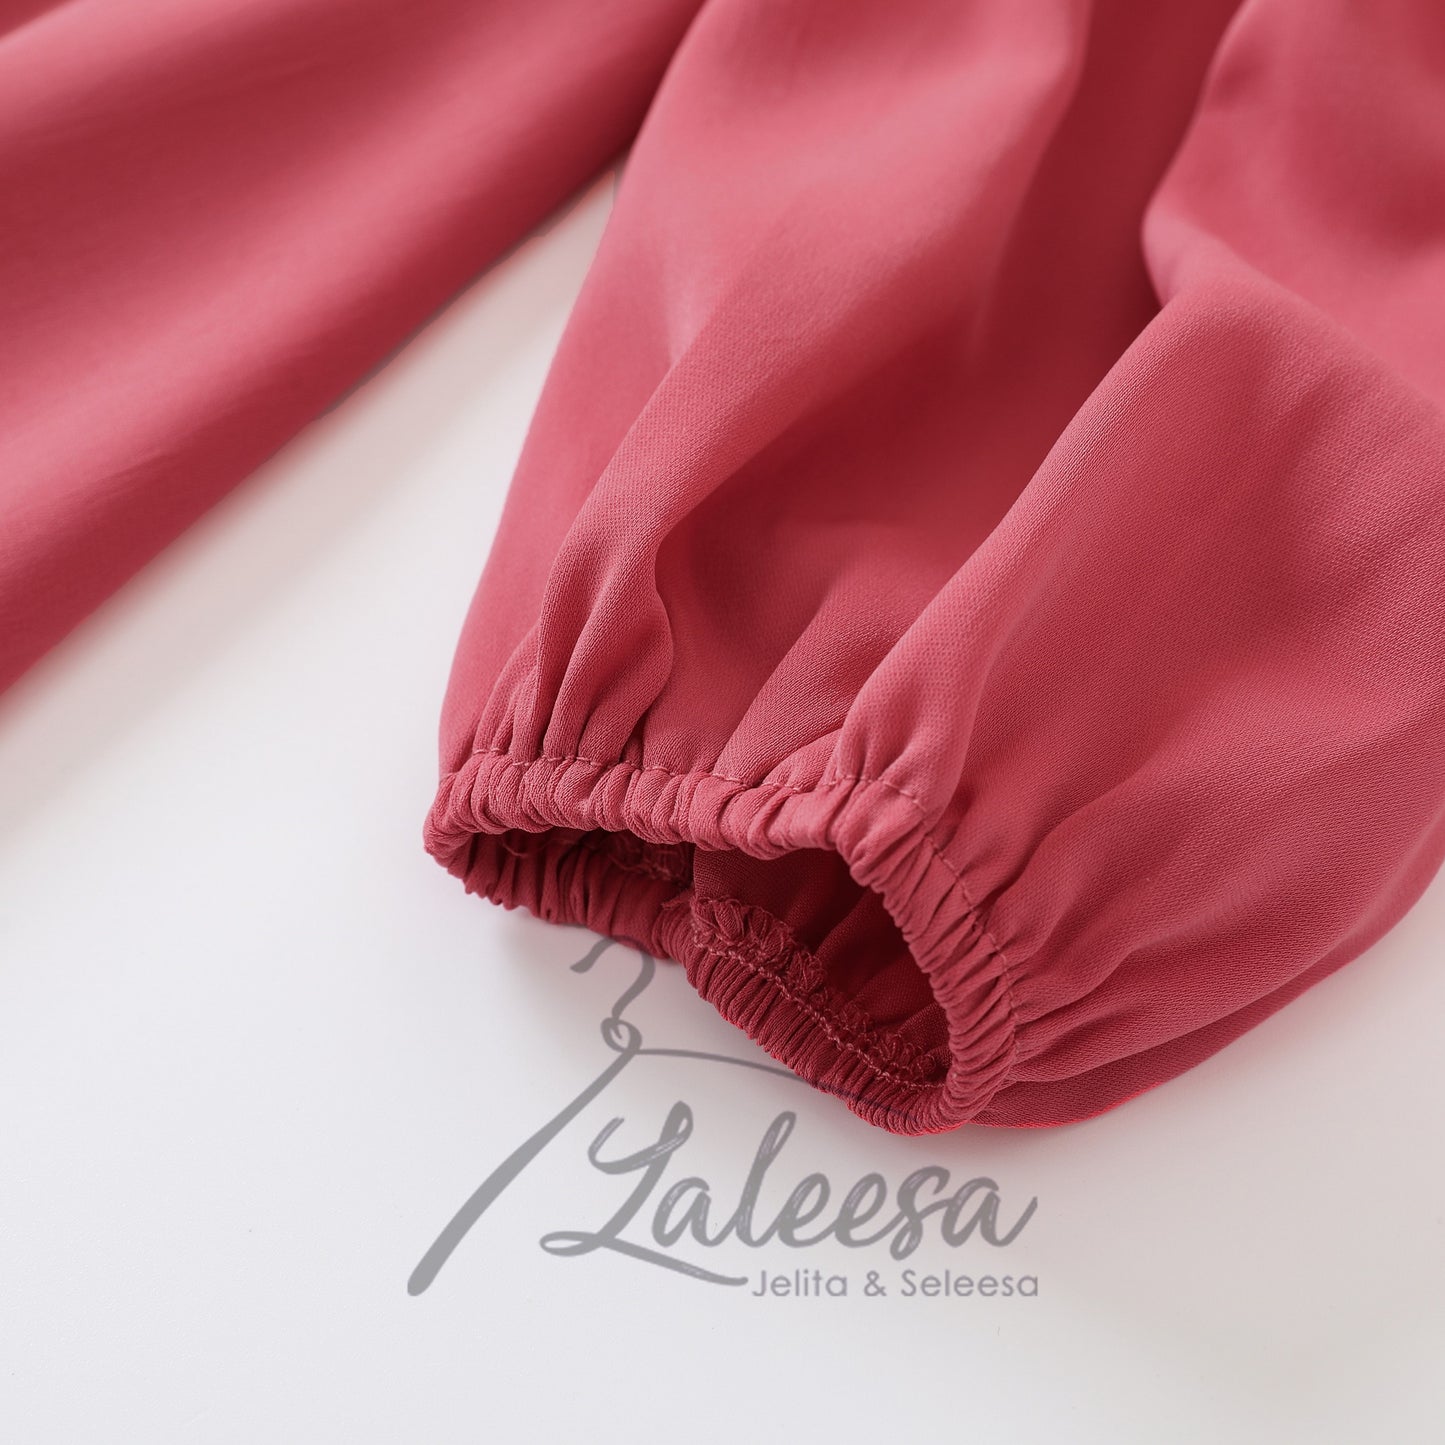 LALEESA DRESS DIYA LD269297 <BF Friendly Series> Plain Color Front Zipper Belted Long Dress Muslimah Dress Women Dress